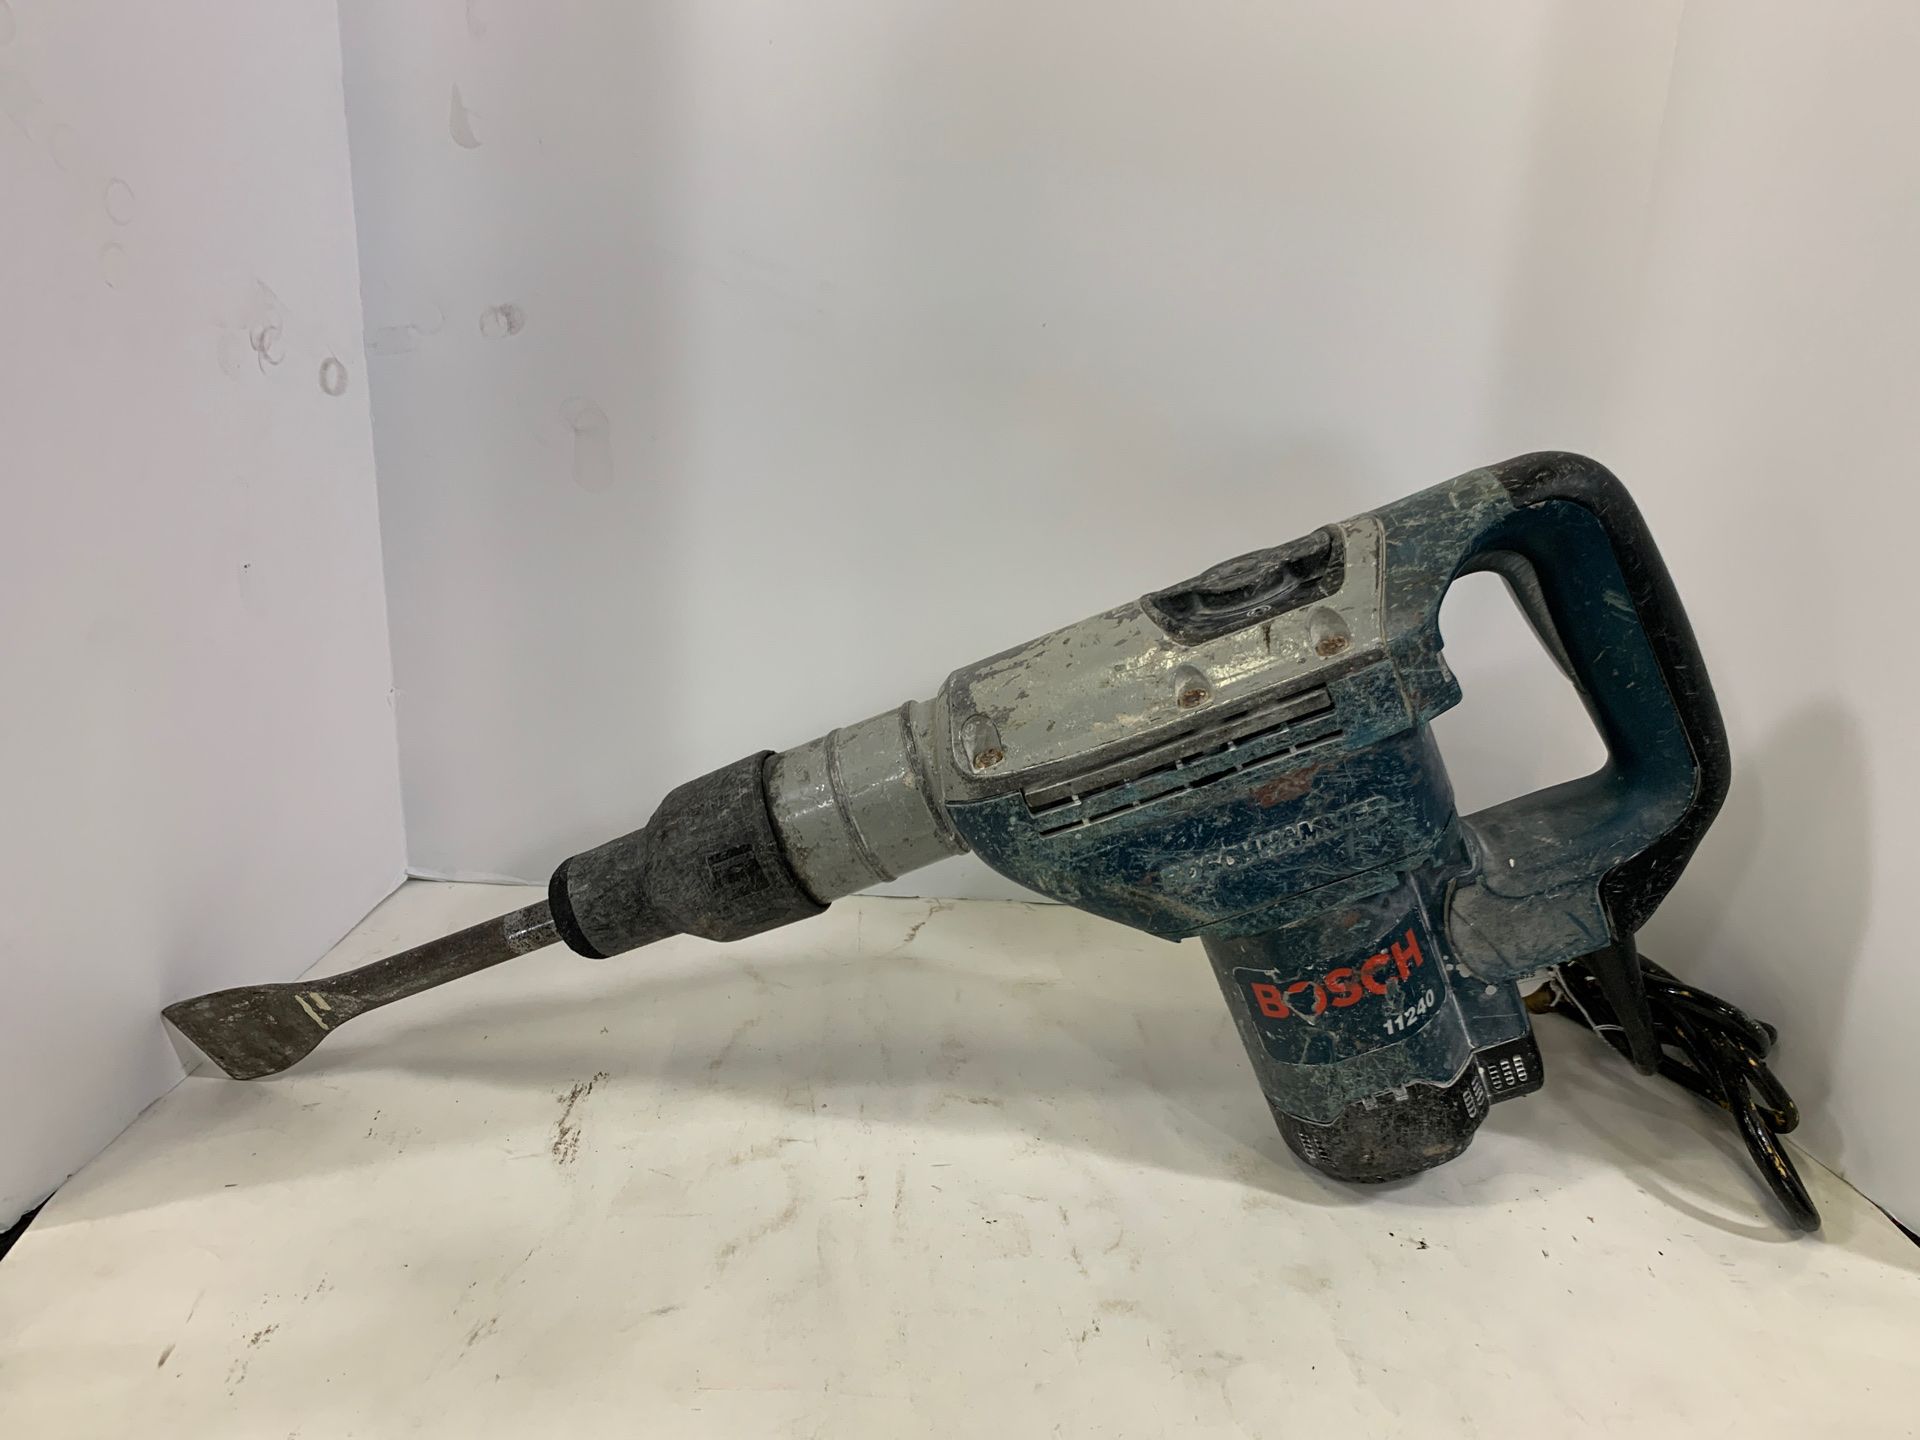 Bosch 11240 rotary hammer drill